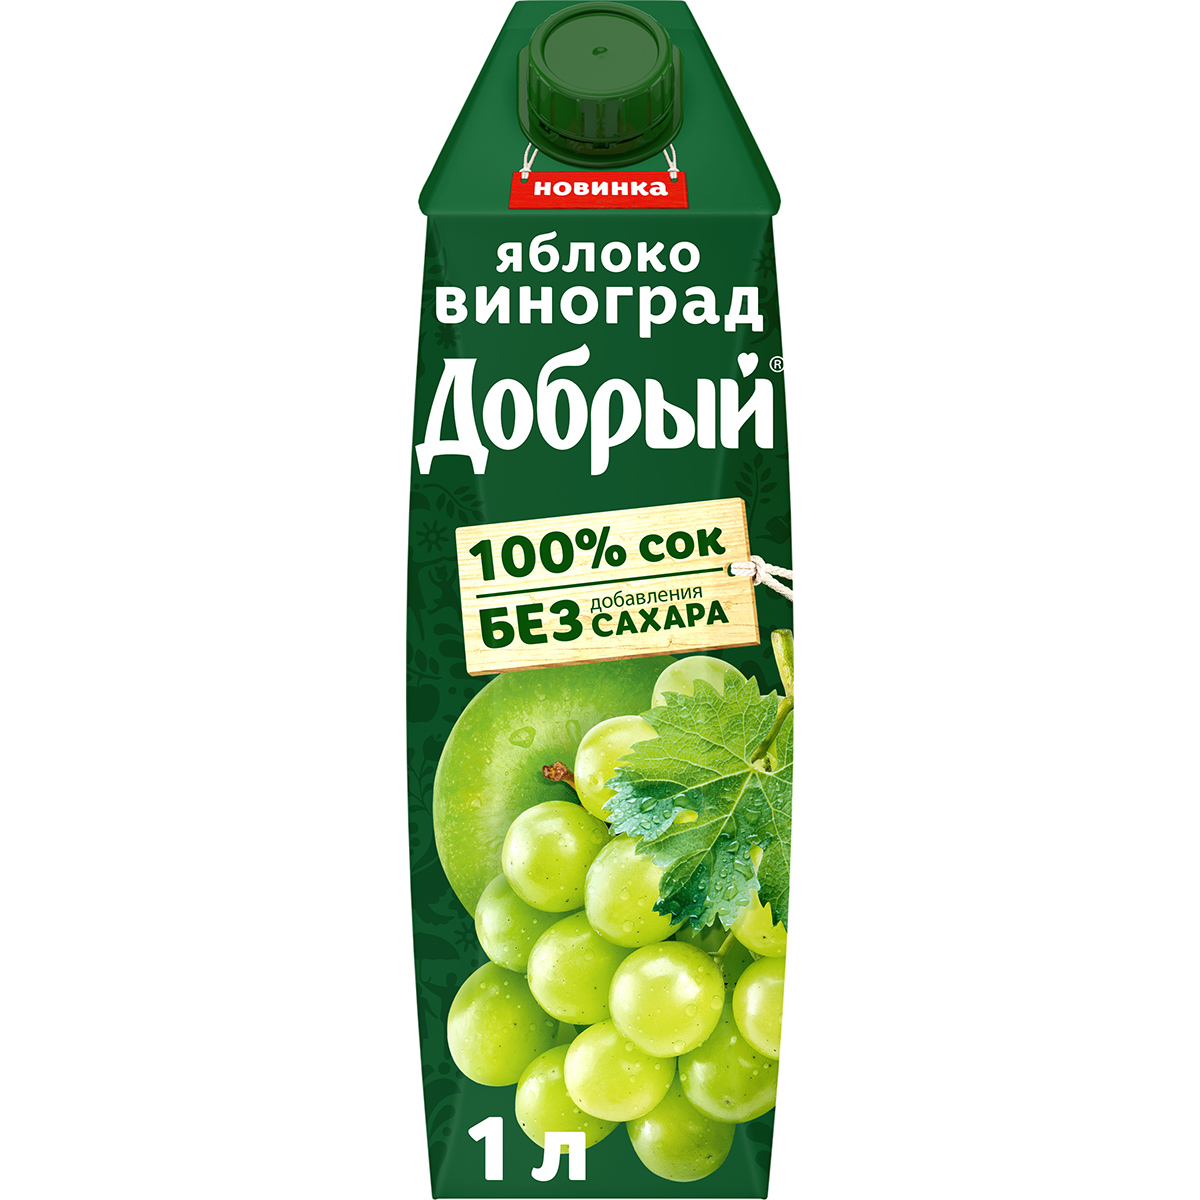 Сок Добрый Яблоко-виноград 1 л сок соки крыма яблоко черника 1 л